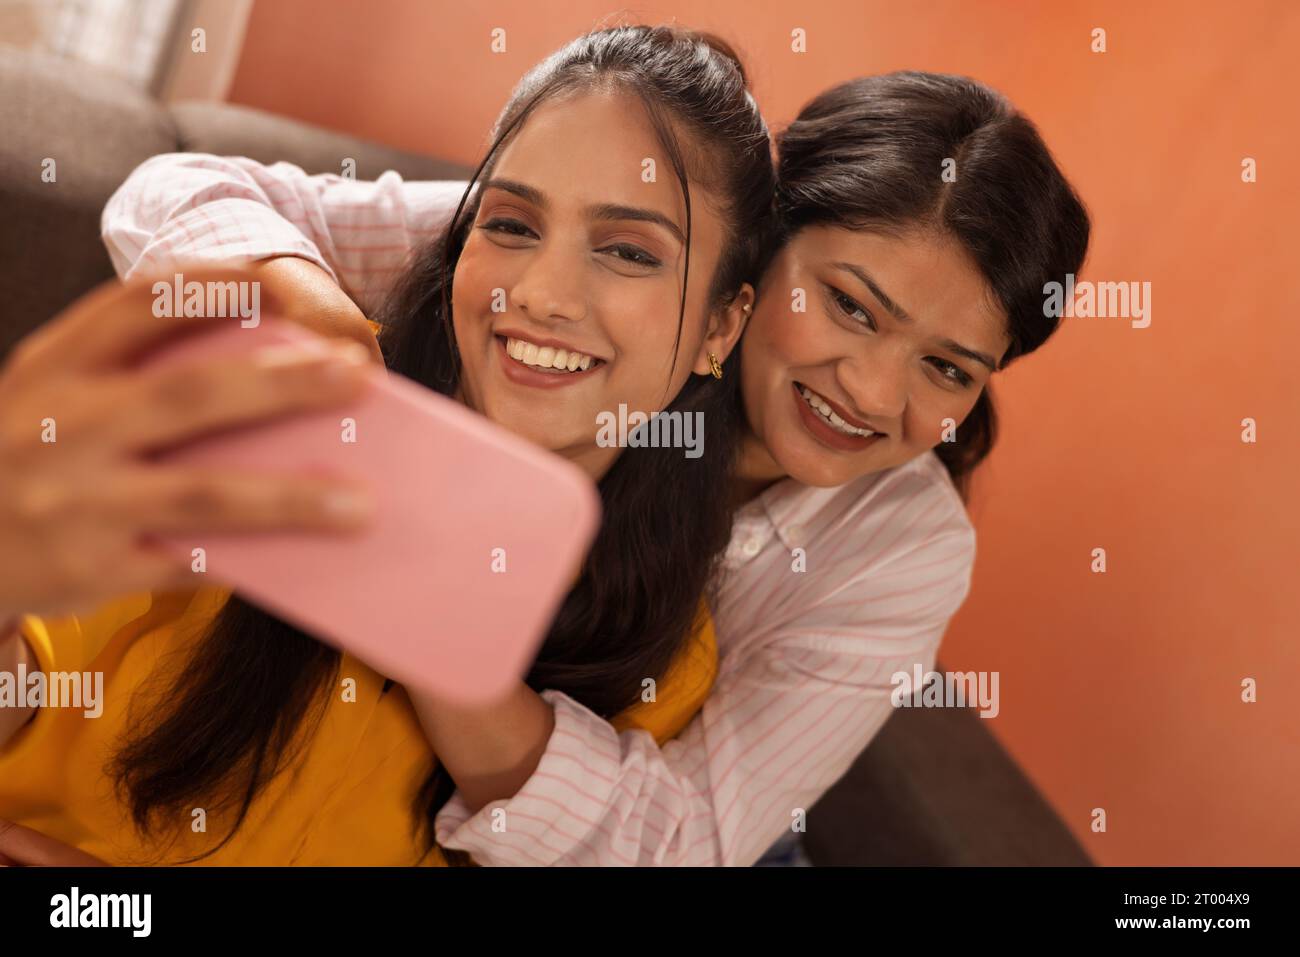 Nahporträt zweier junger Frauen, die gemeinsam Selfie machen Stockfoto